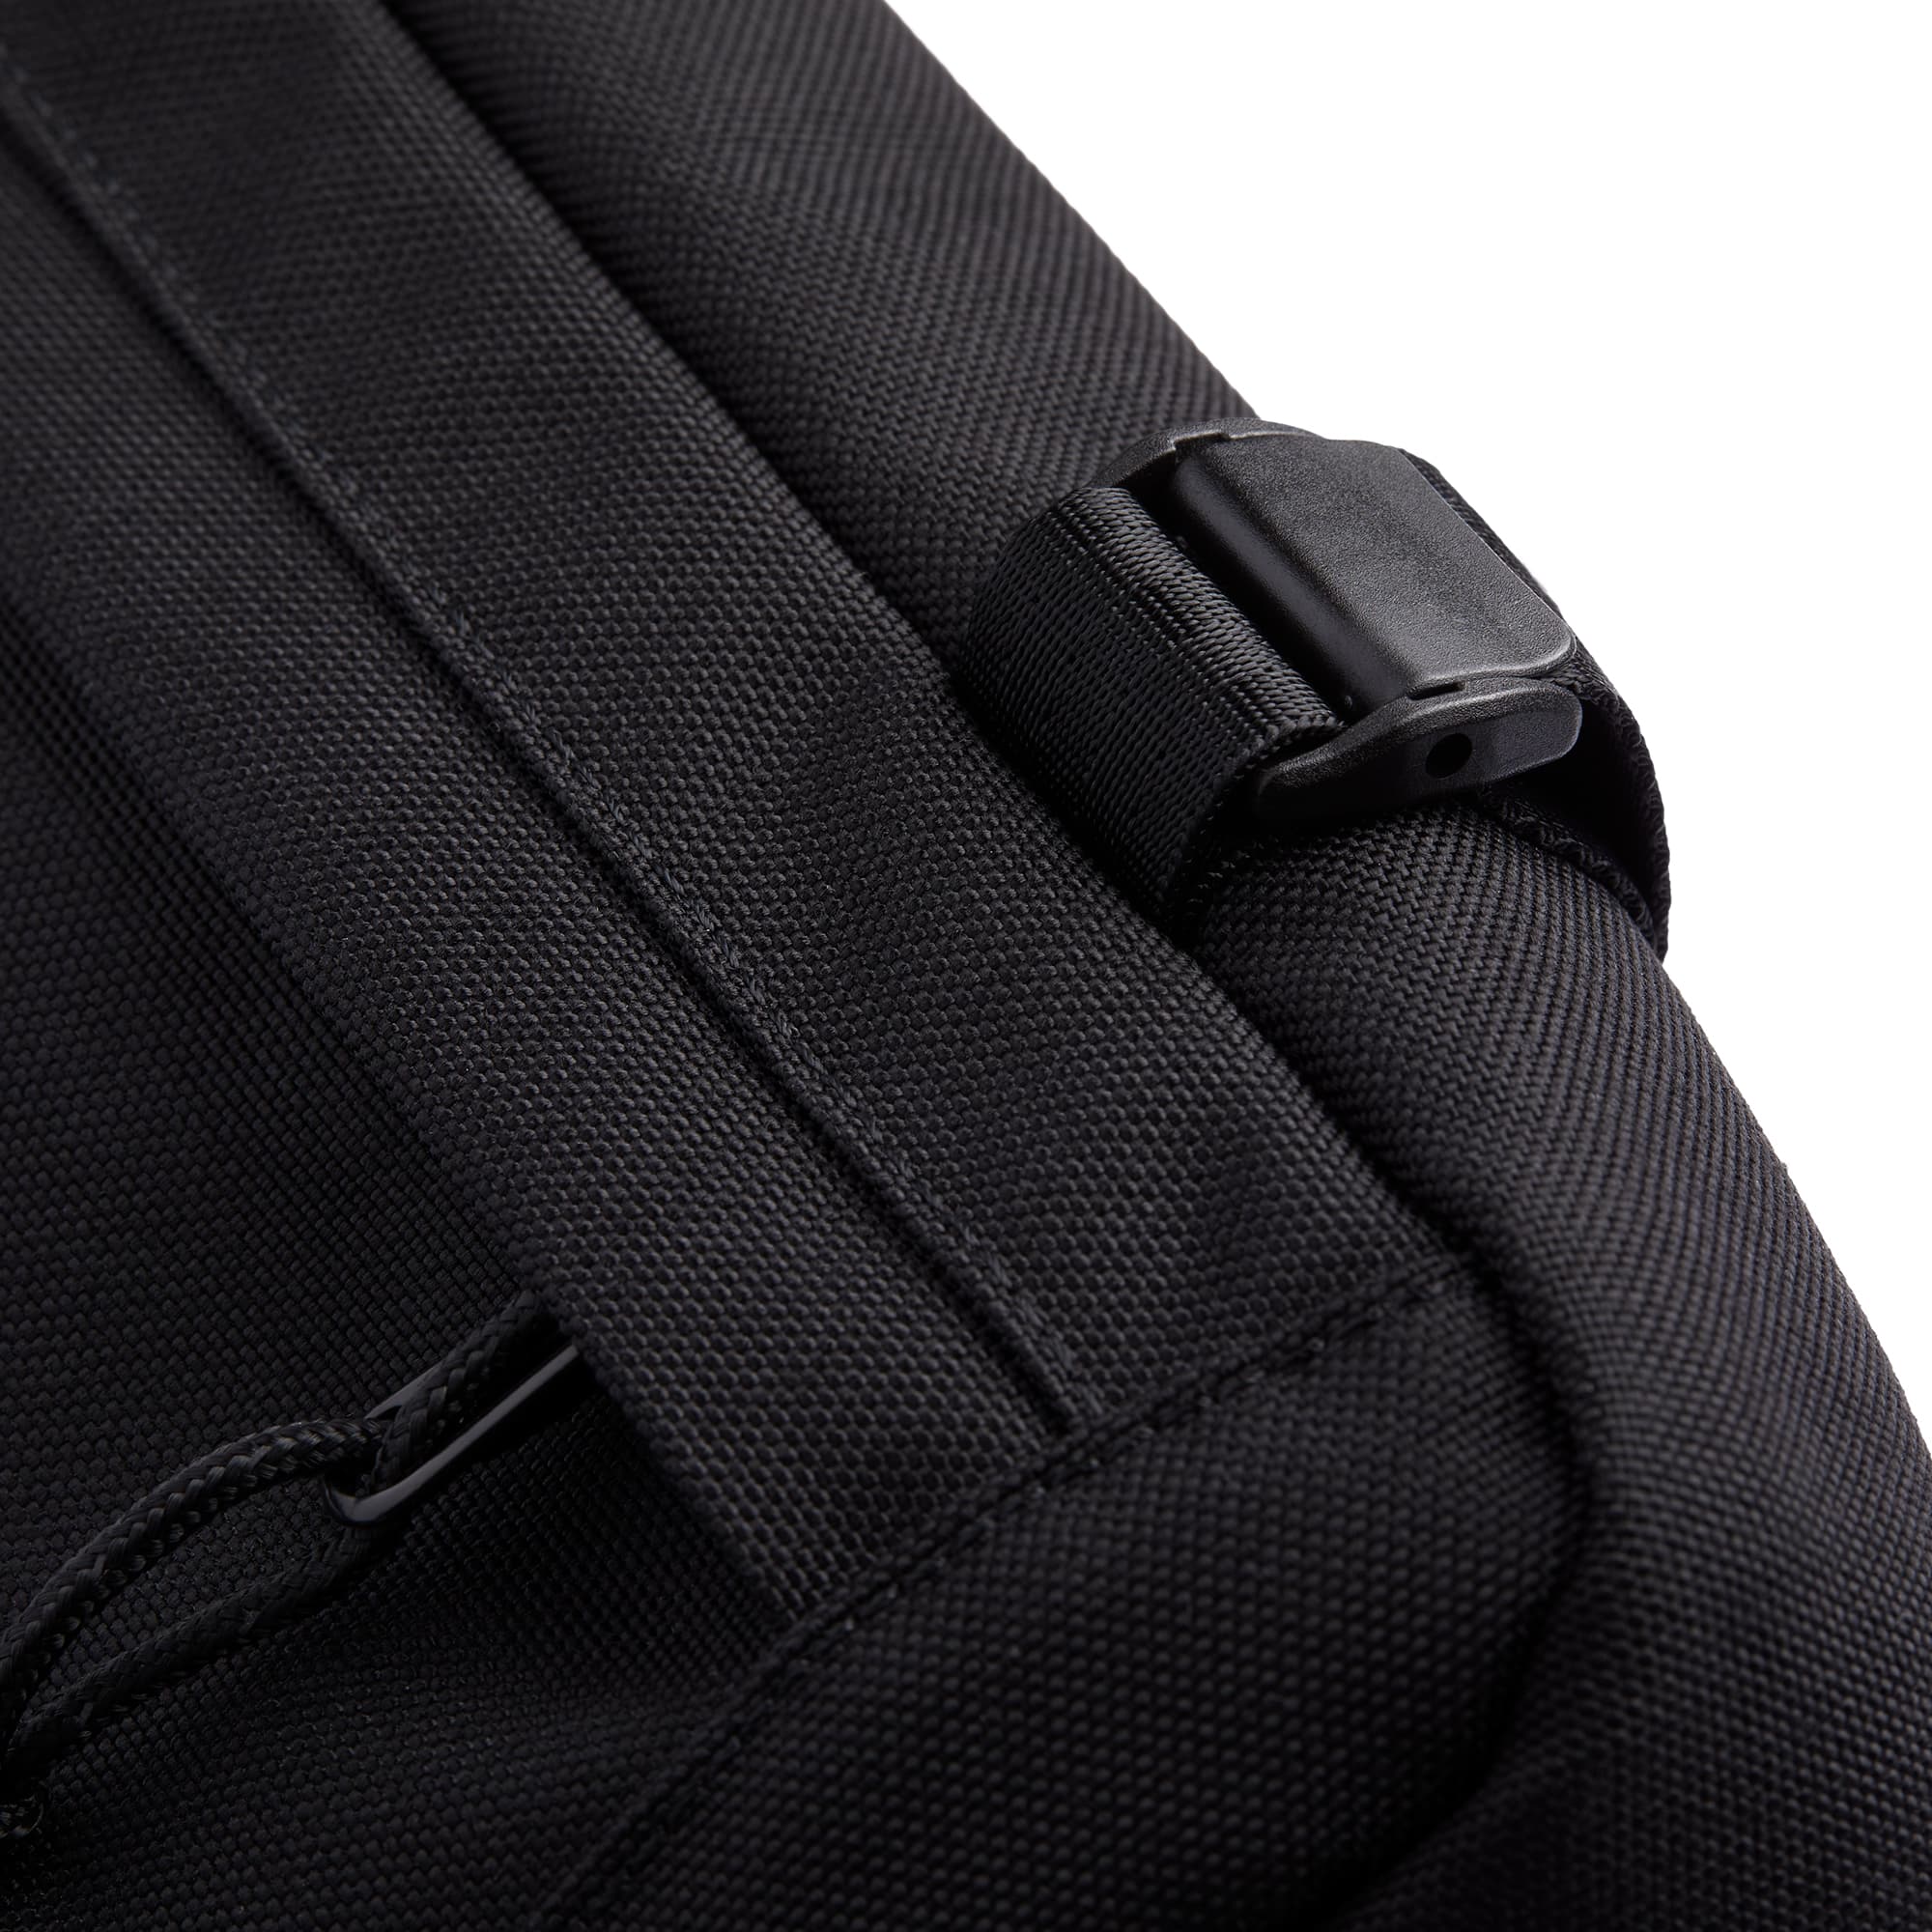 2L Doubletrack Frame Bag in black buckle detail #color_black